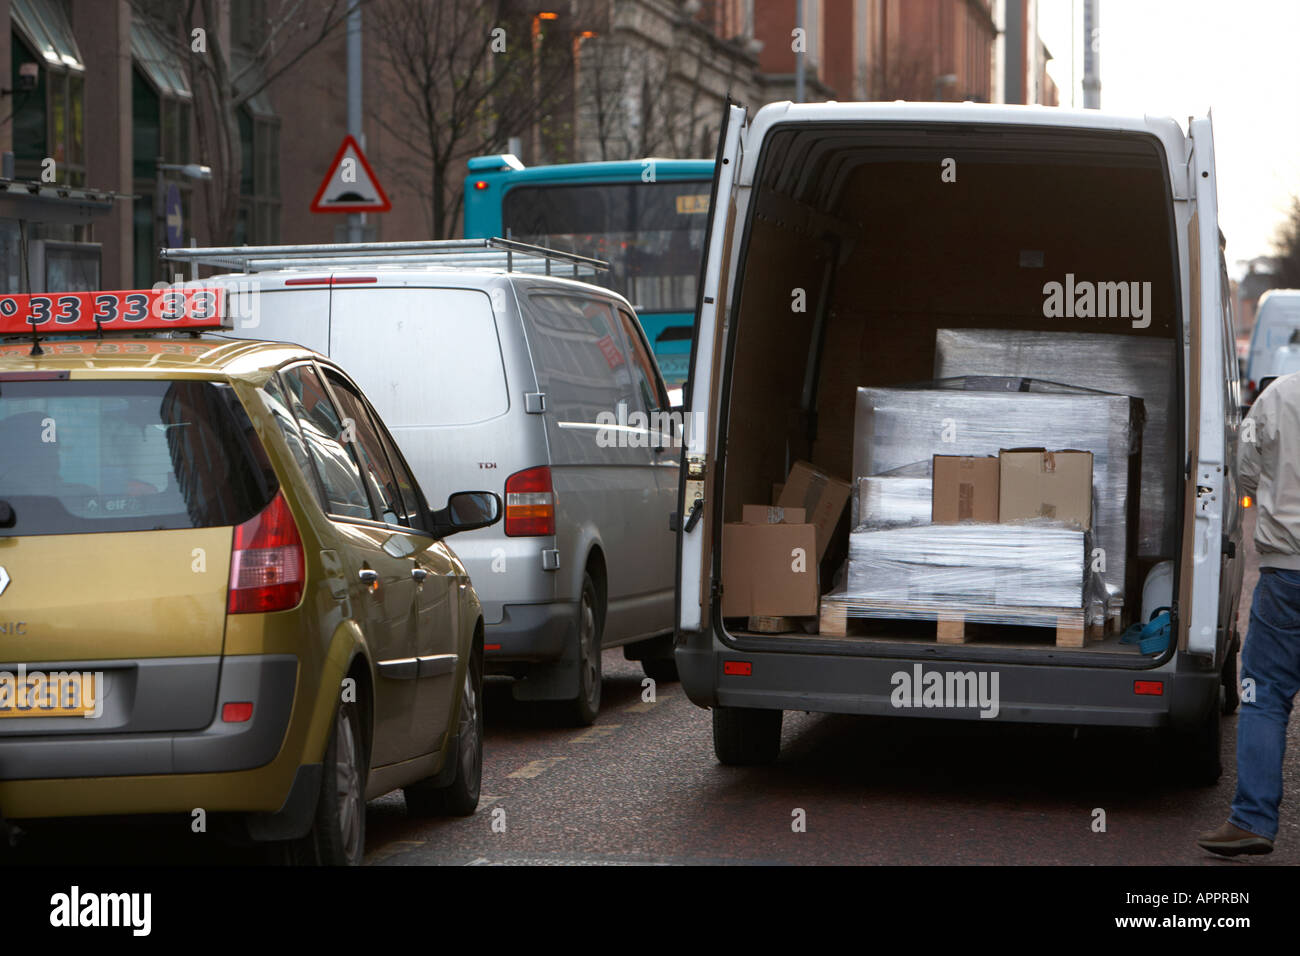 weißer Lieferwagen Lieferfahrzeug mit umschlossenen Palettenboxen Doppel geparkt in der Straße Belfast Nordirland Vereinigtes Königreich Stockfoto